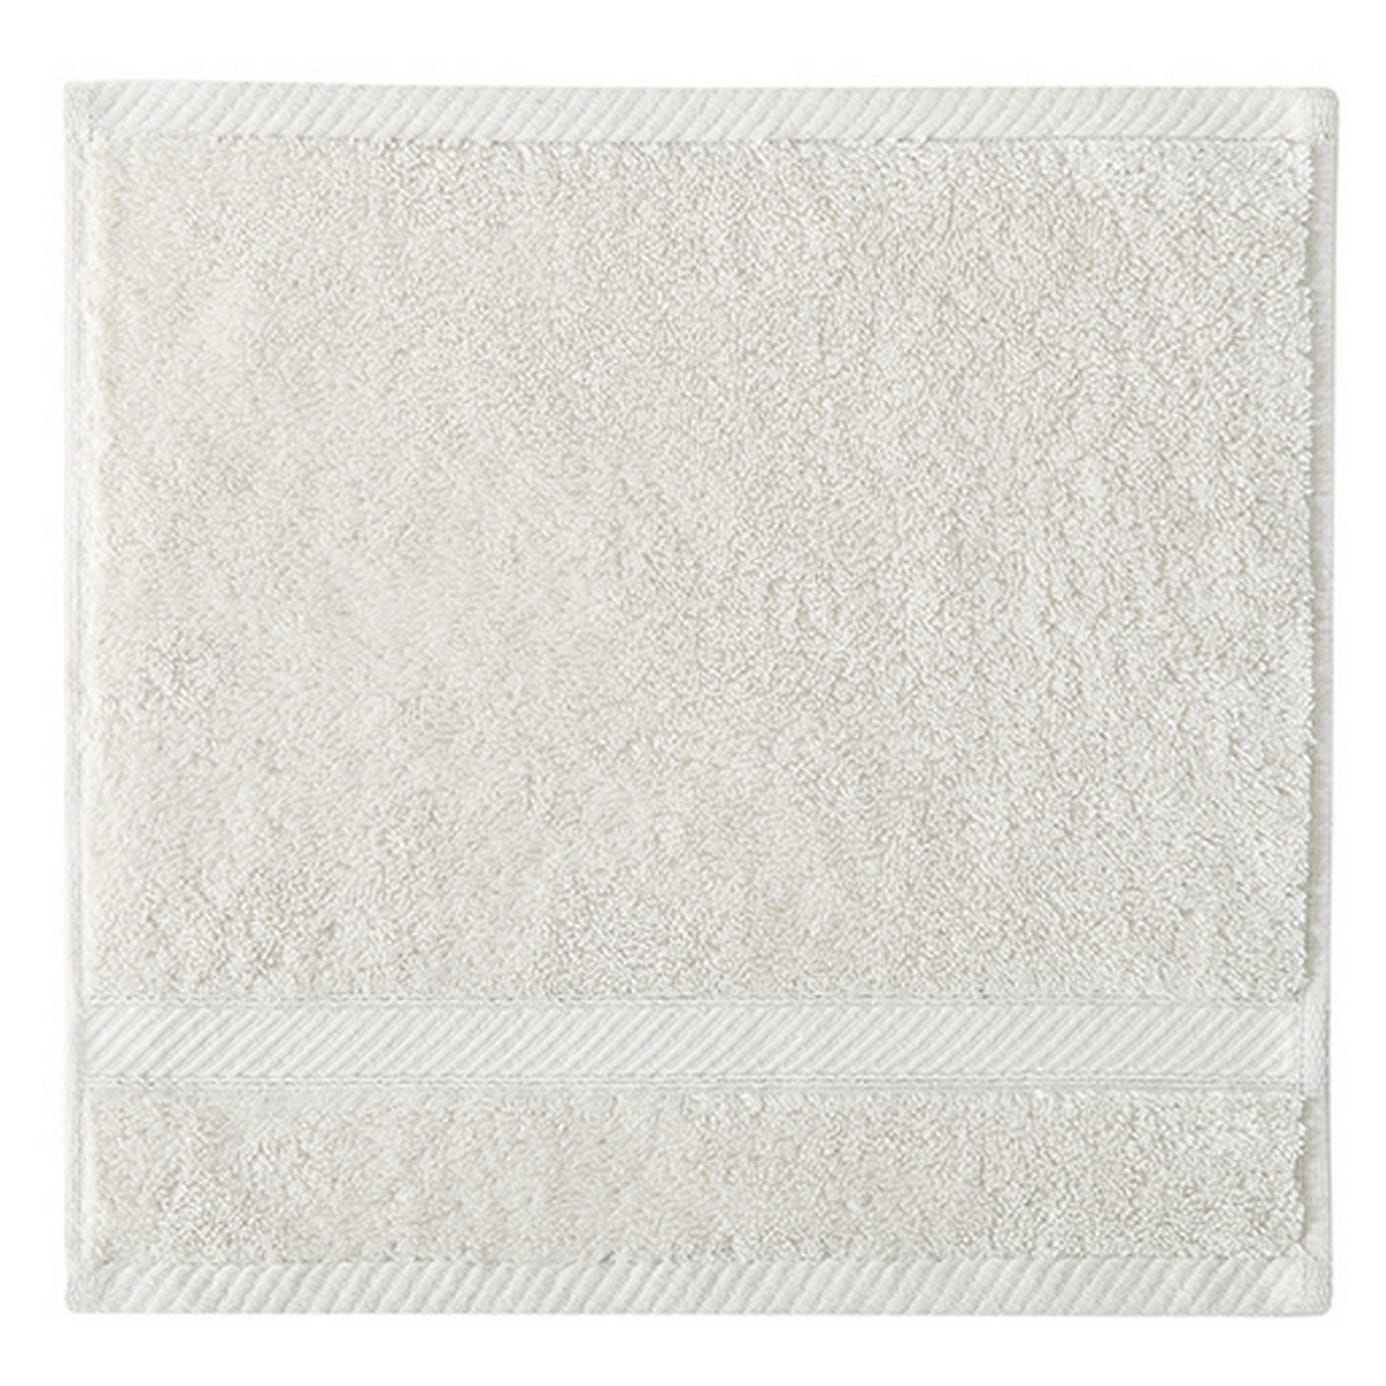 Charisma New Bath Sheet Bundle Set  2 Luxury Bath Sheets 35 W X 70 L  (White)